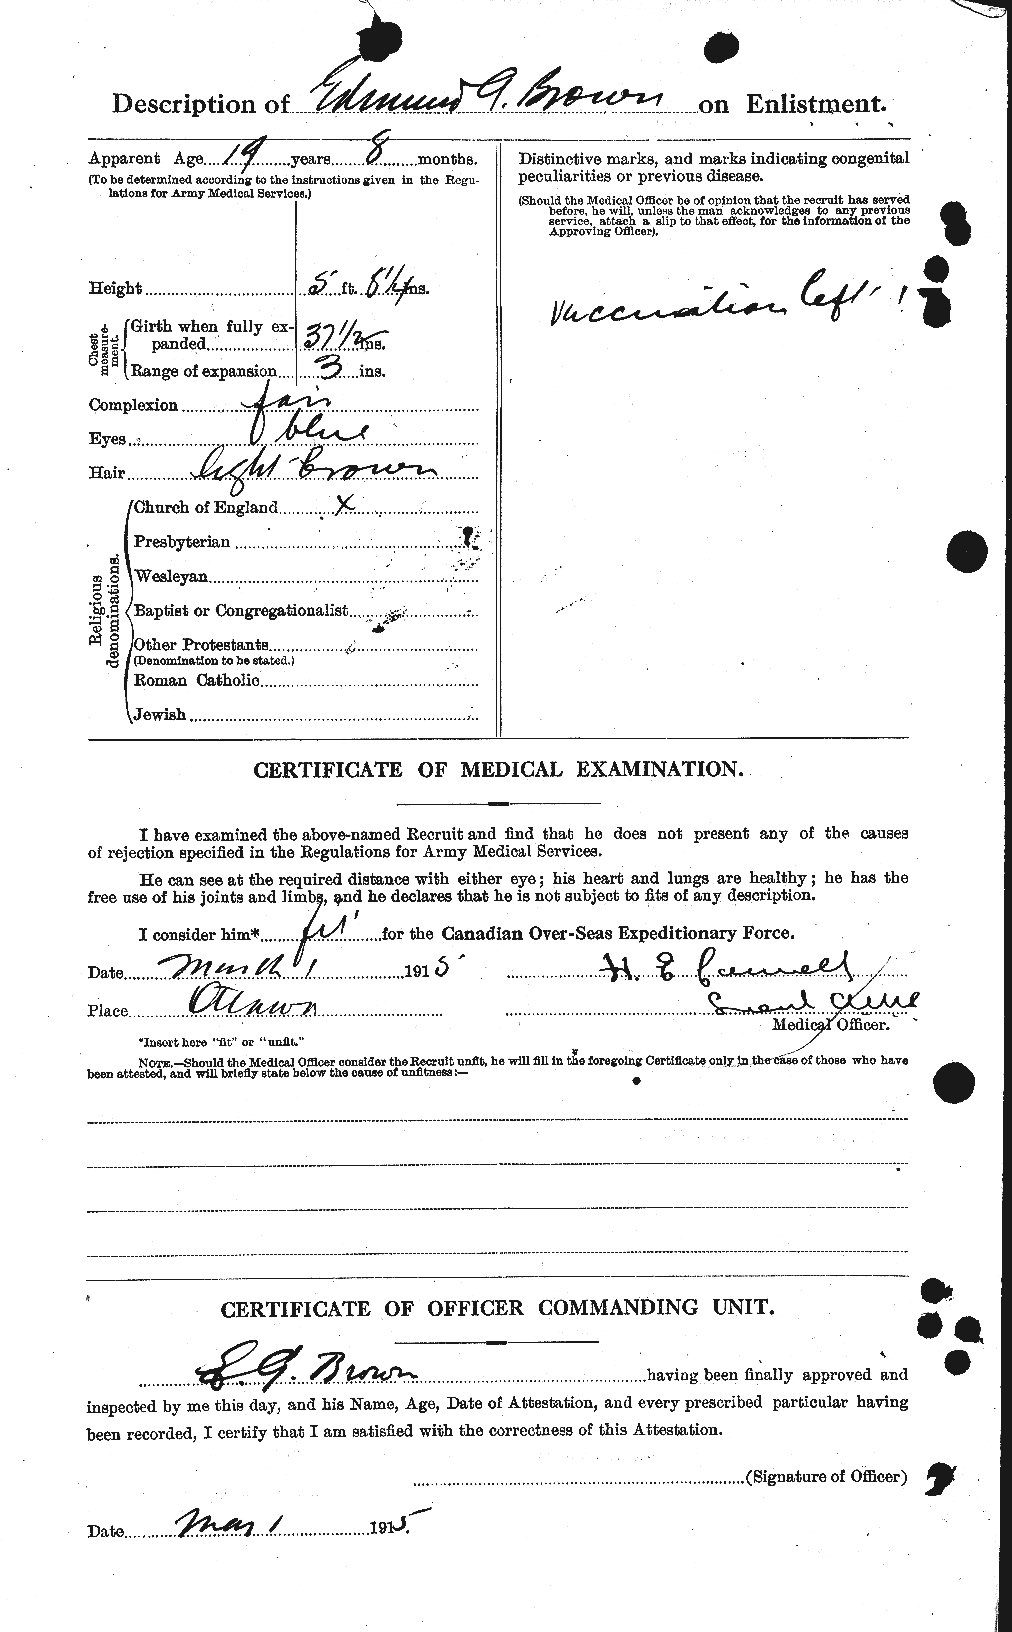 Dossiers du Personnel de la Première Guerre mondiale - CEC 263329b